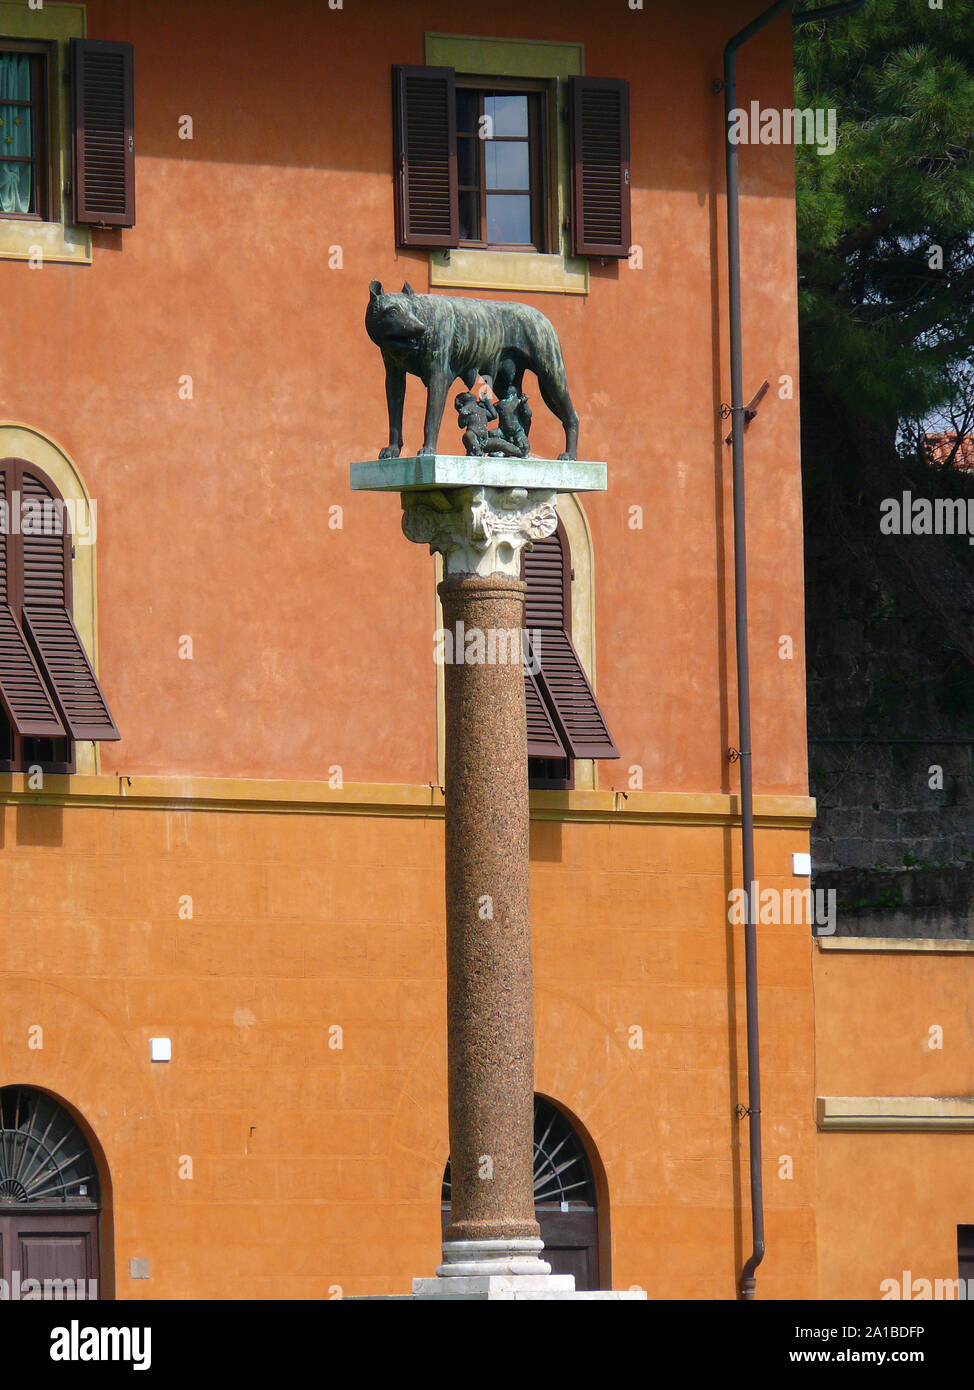 Statua di una donna lupo,Piazza dei Miracoli, la Piazza dei Miracoli, Piazza del Duomo, Piazza Duomo Pisa, Toscana, Italia, Europa, Sito del Patrimonio Mondiale Foto Stock